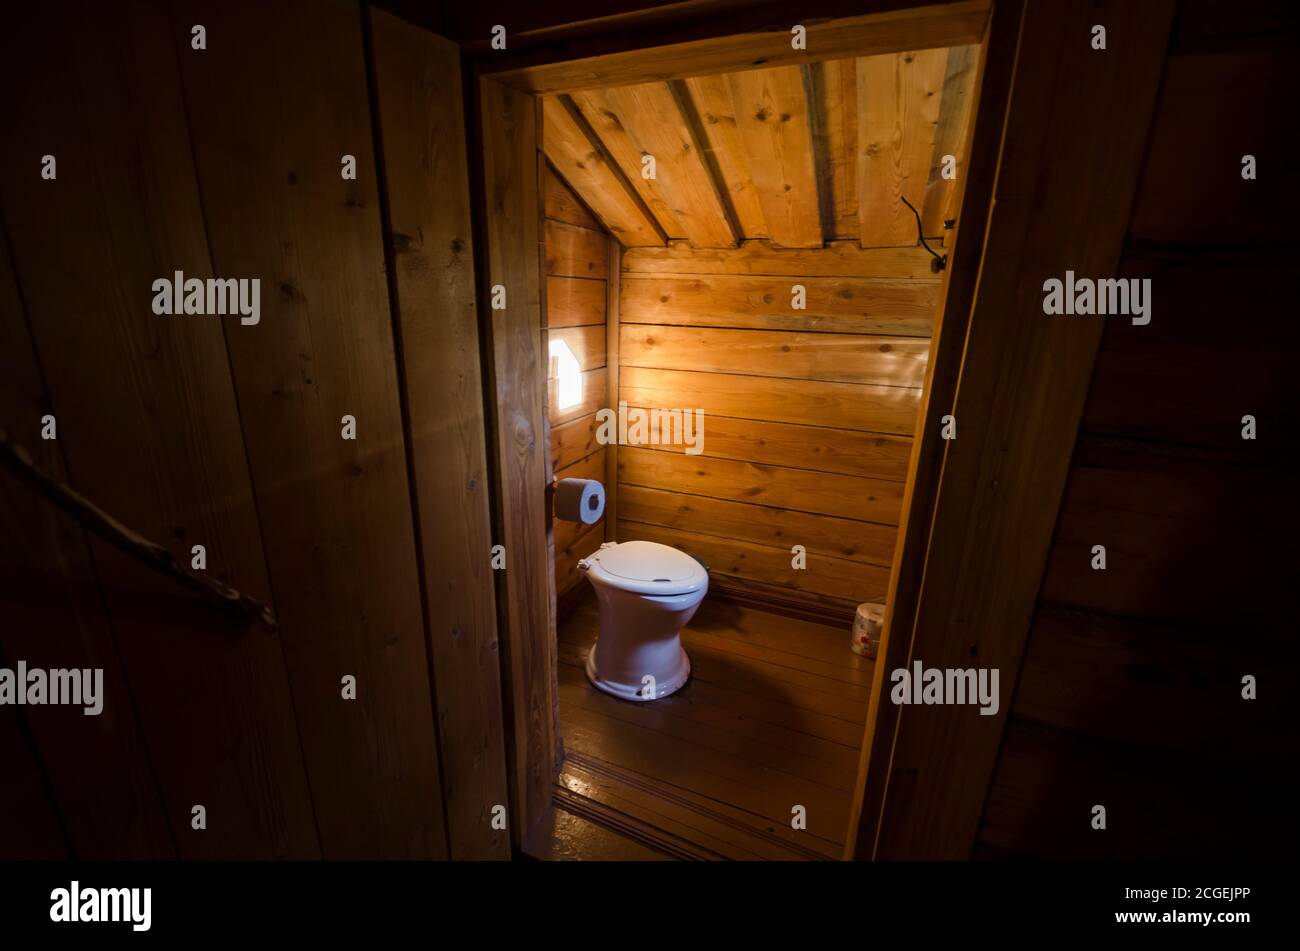 August 2020 - Porschenski Kirchhof. Toilette in einem russischen Landhaus. Russland, Archangelsk Region Stockfoto